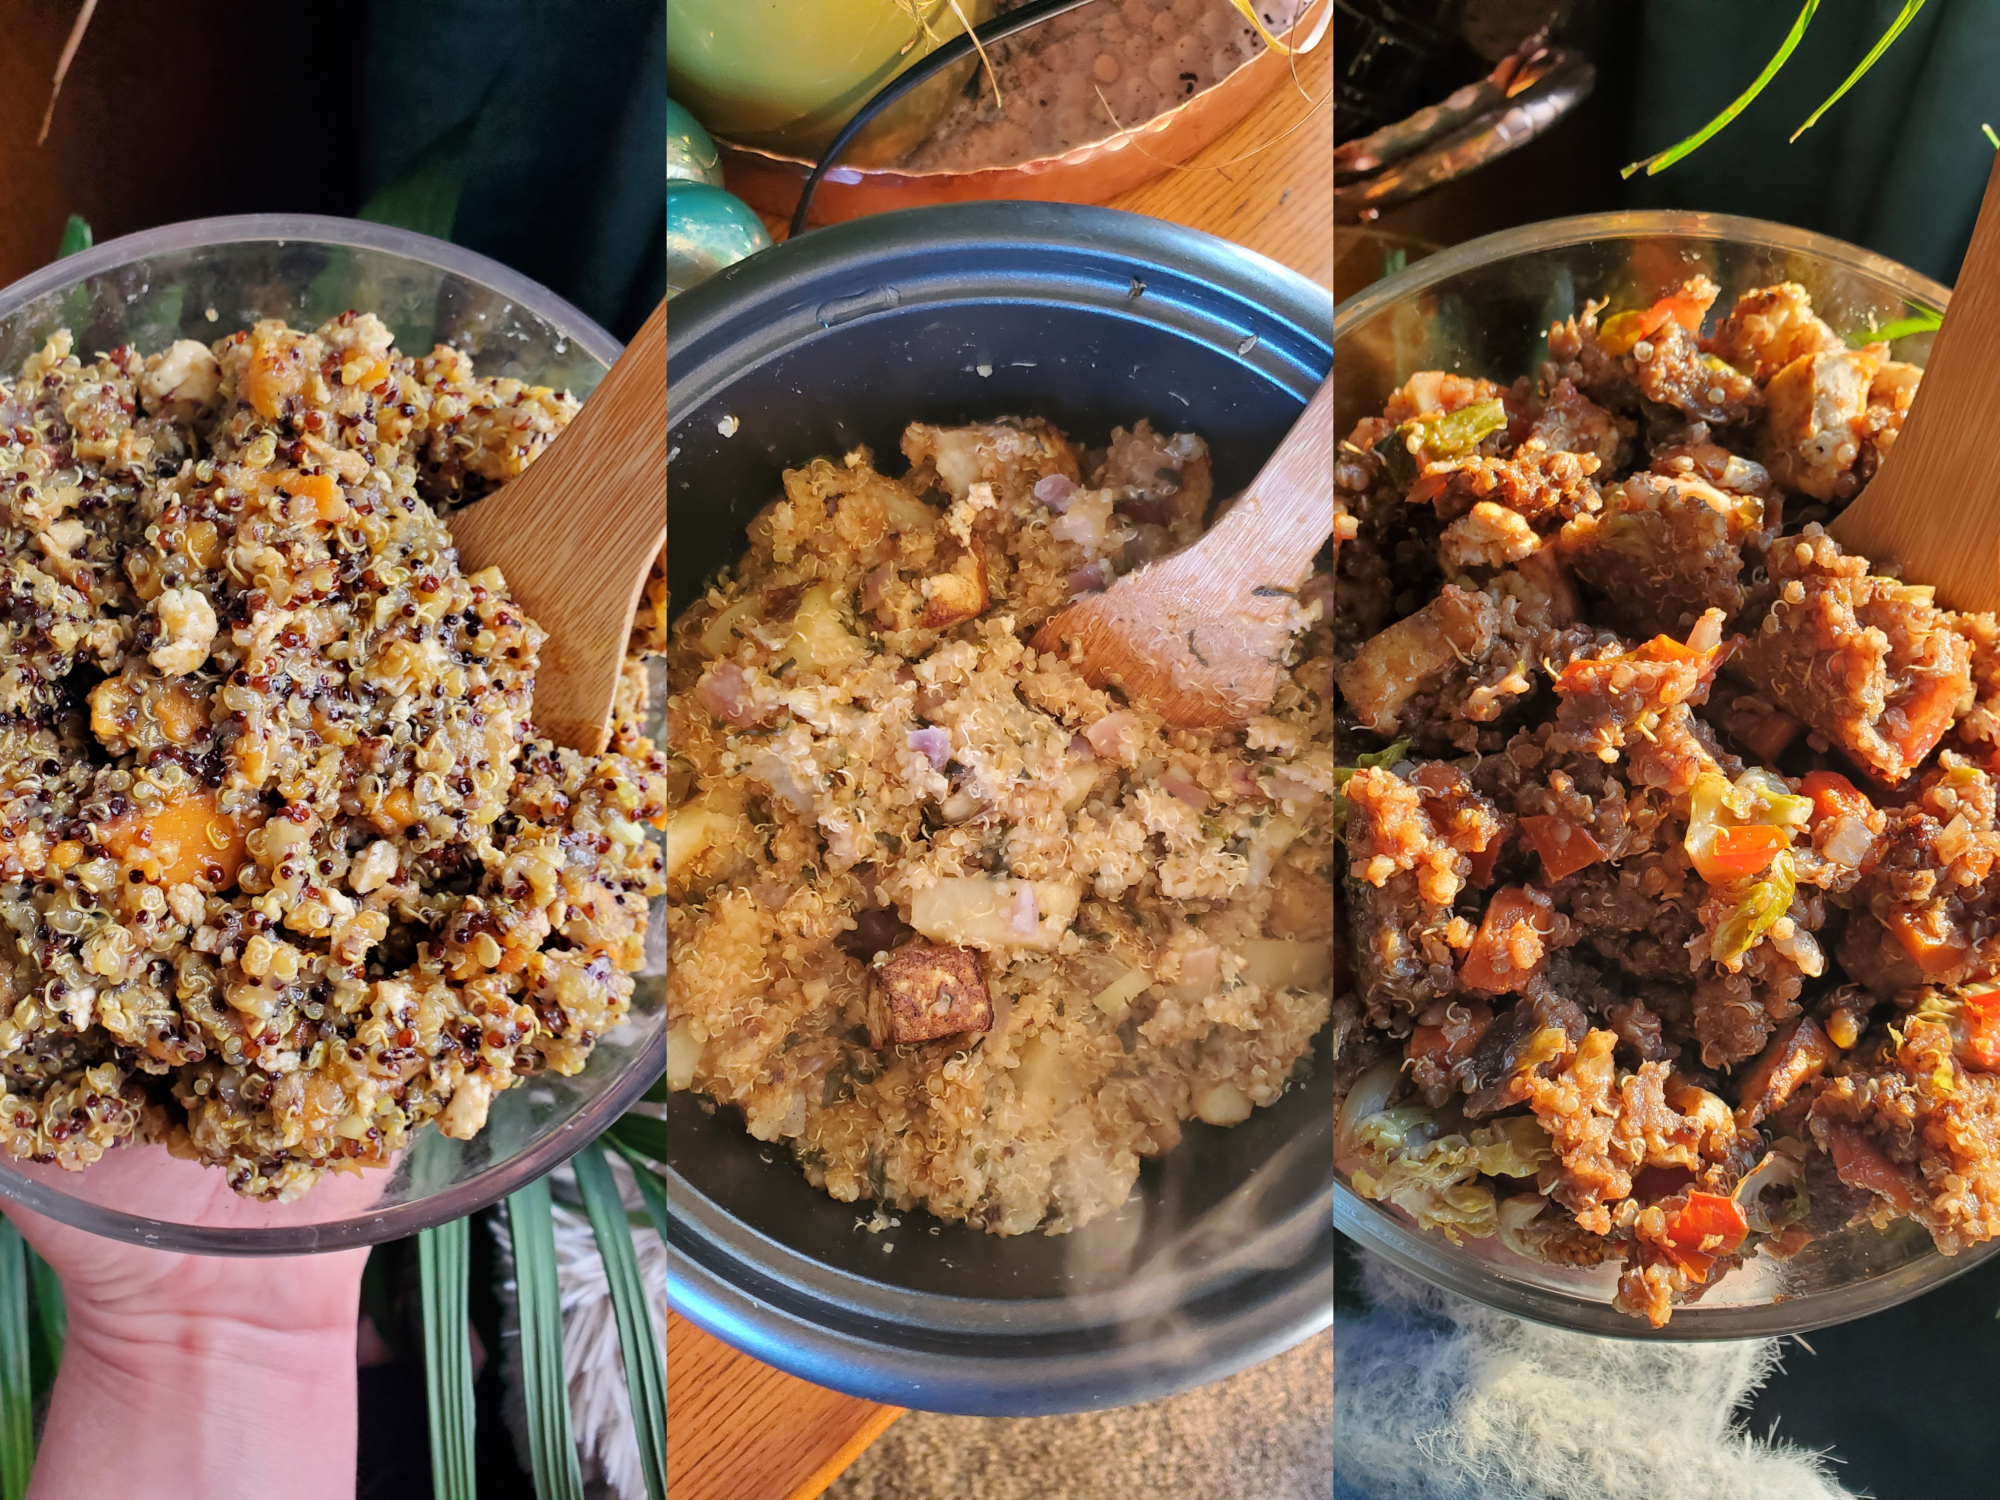 The Fundamentals of Making Quinoa